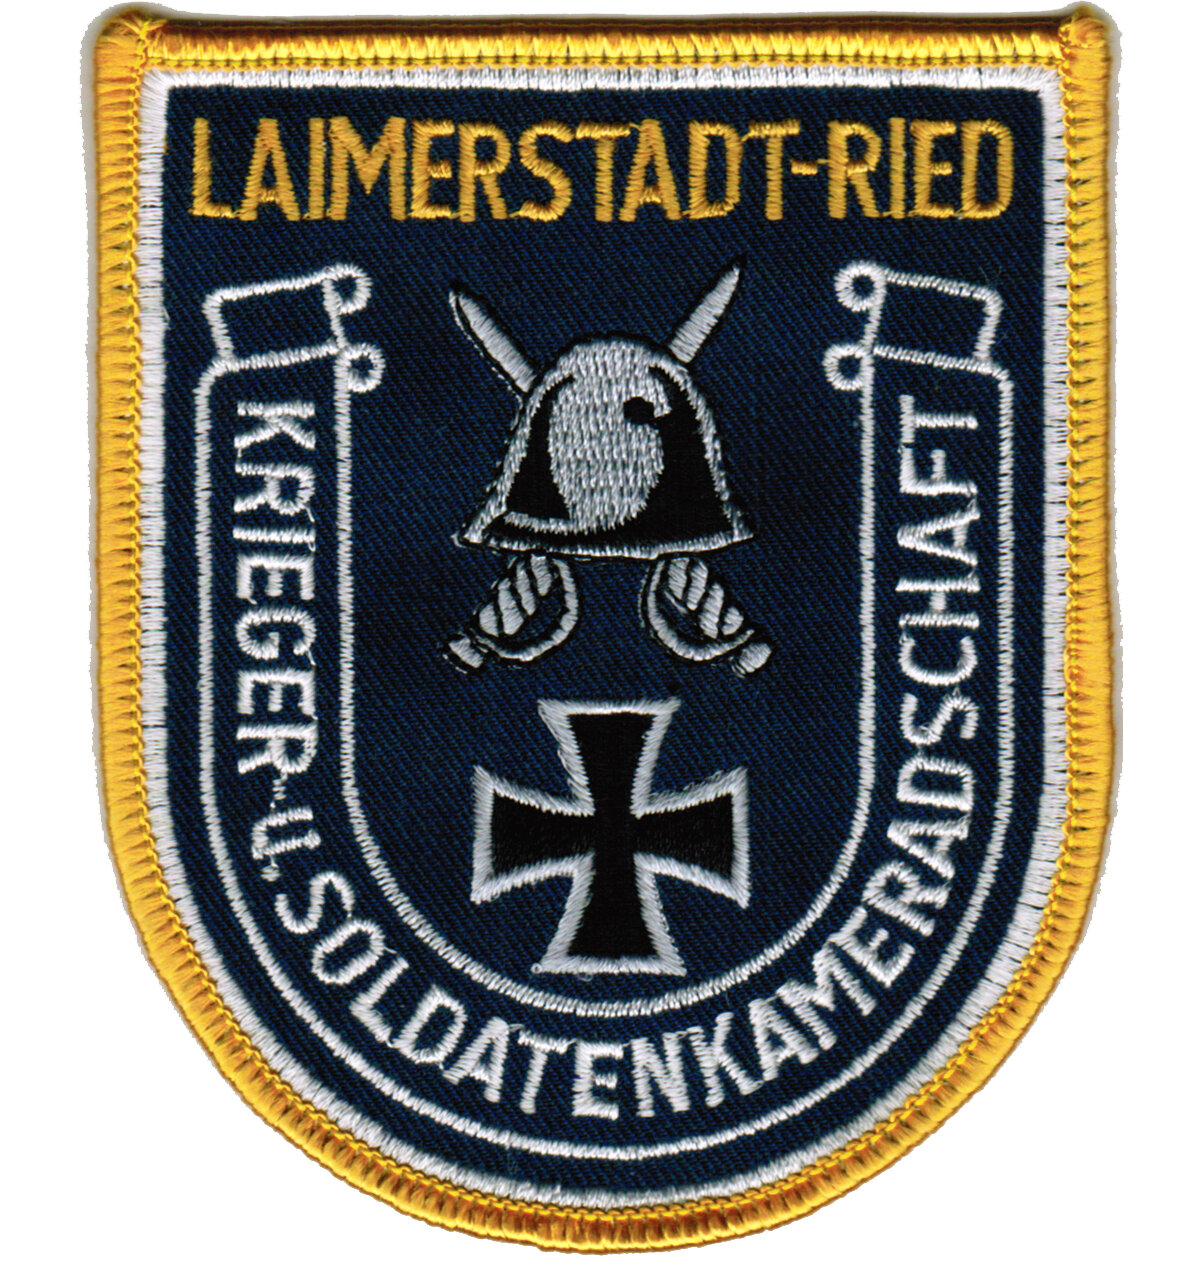 krieger-und-kameradenverein-laimerstadt-ried.jpg